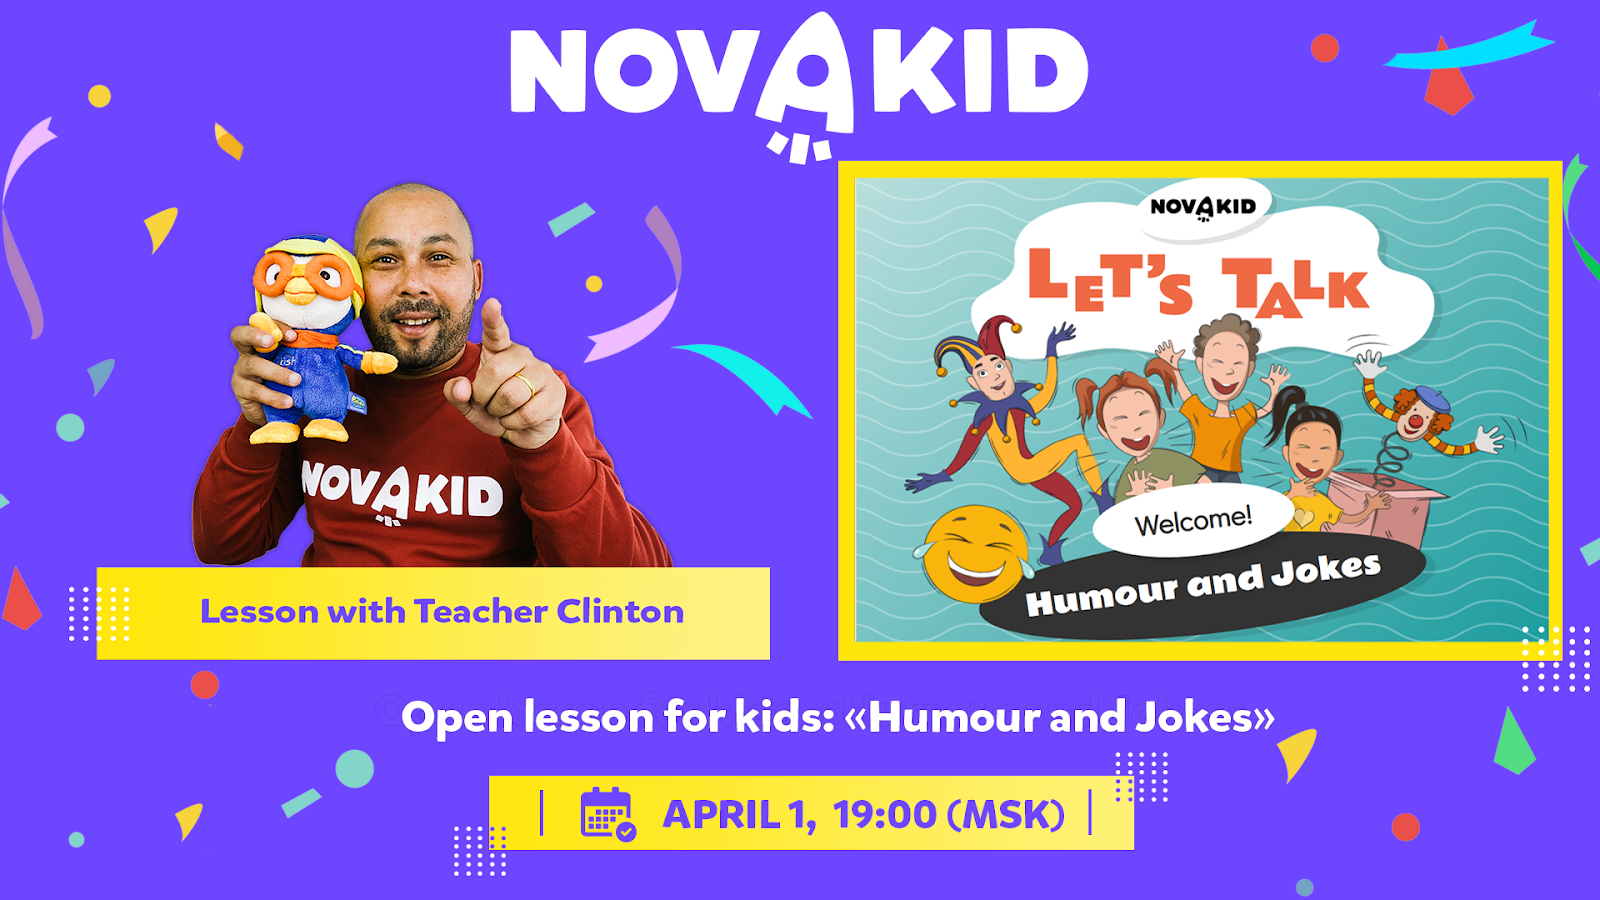 Шутки в сторону: Novakid приглашает на открытый «первоапрельский» урок